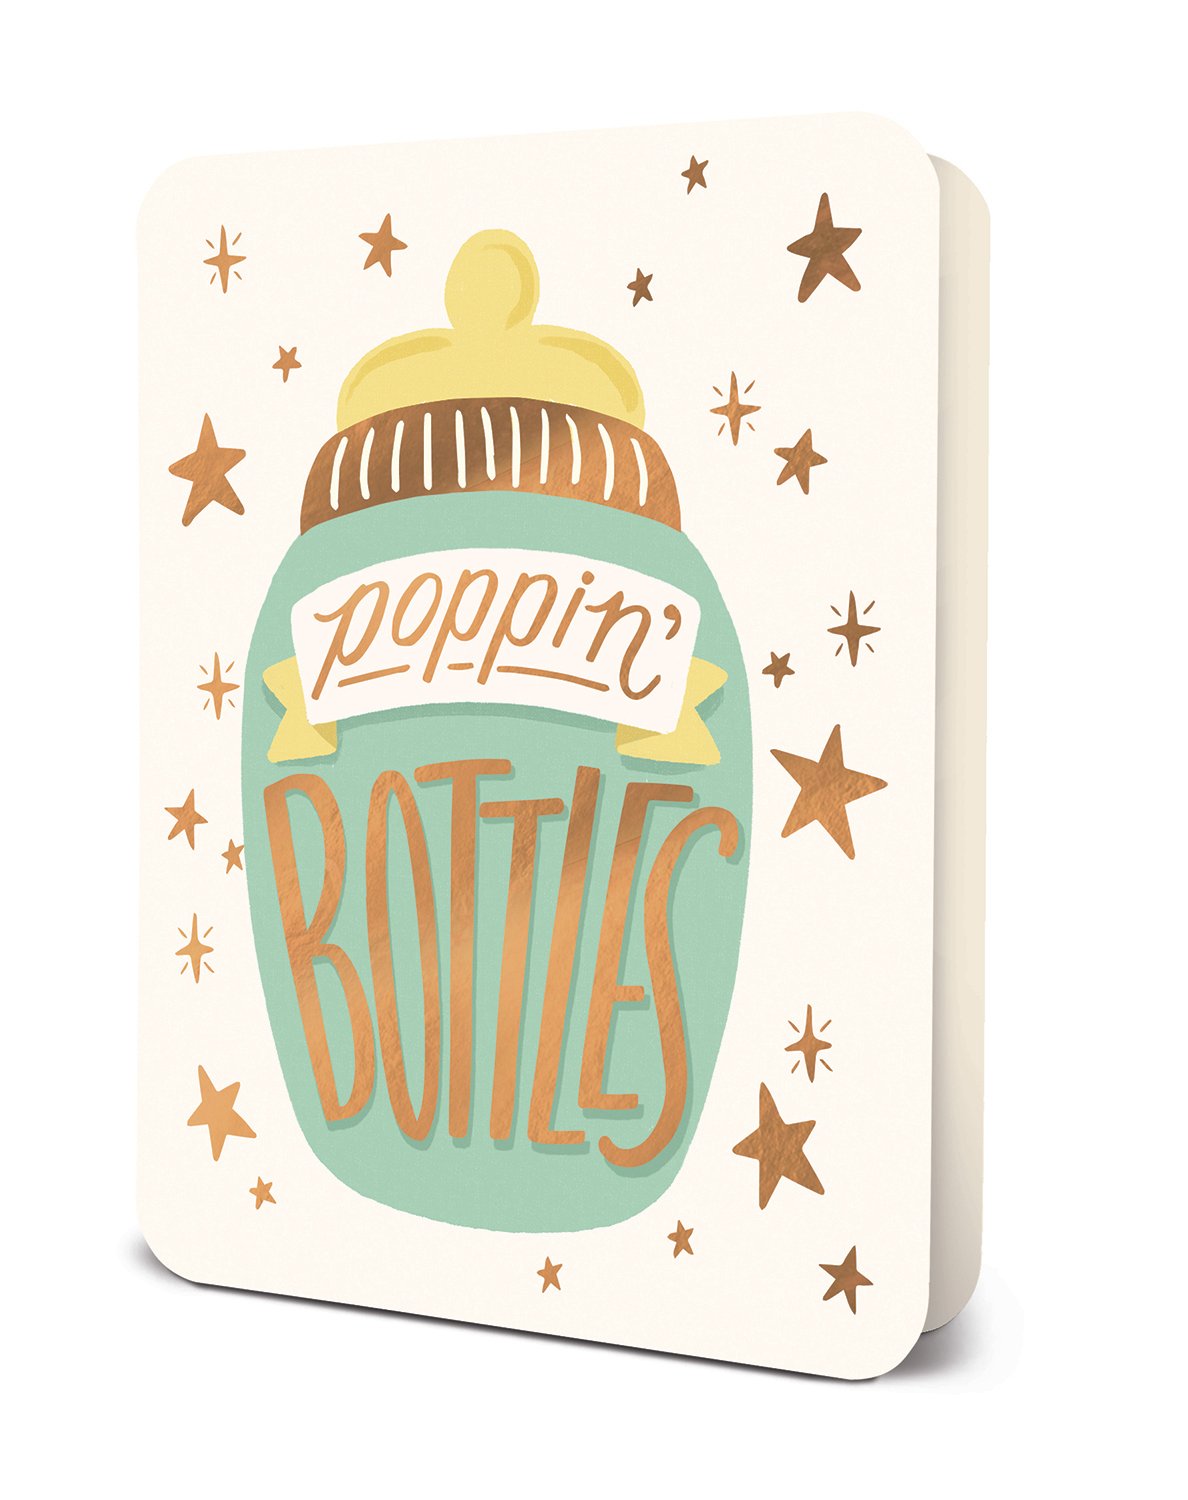 Poppin Bottles - Greeting Card Greeting Card Orange Circle Studio